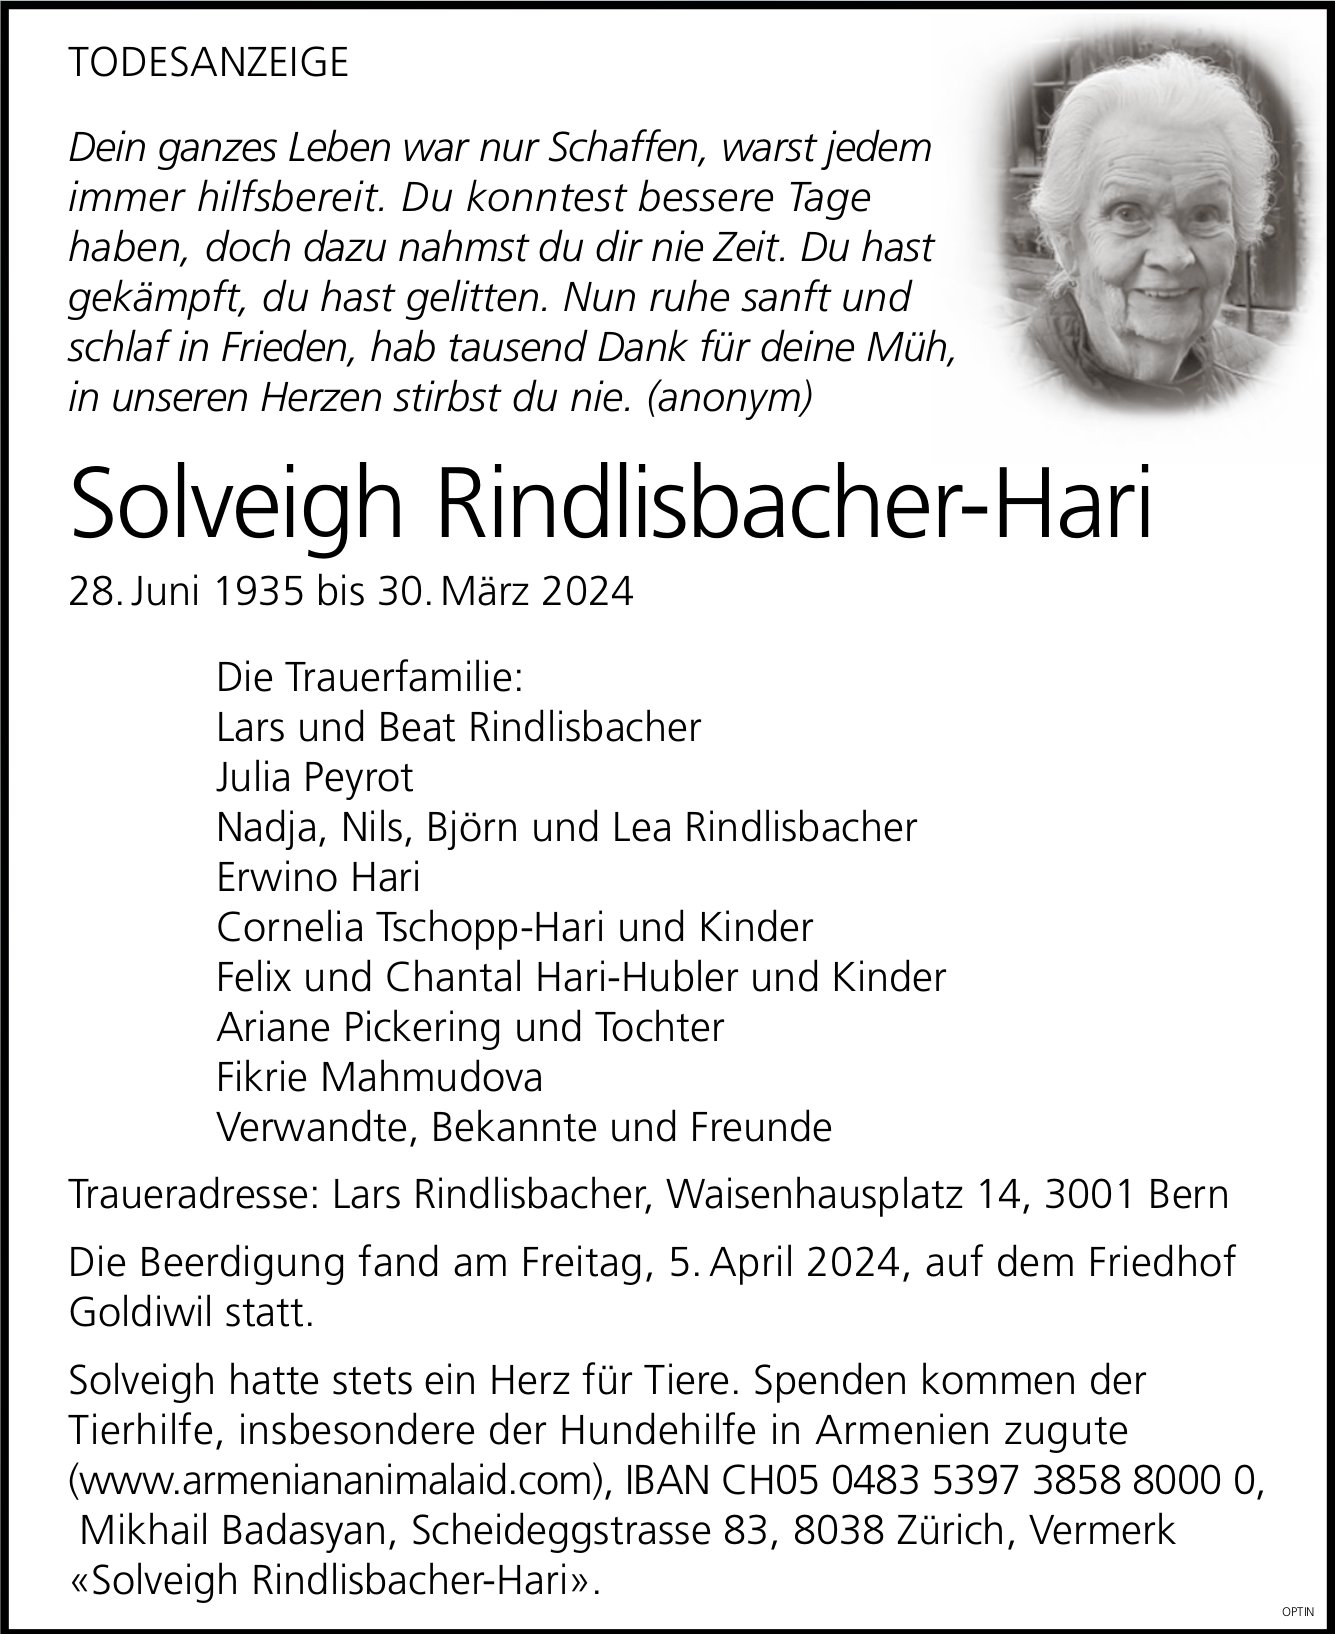 Solveigh Rindlisbacher-Hari, März 2024 / TA